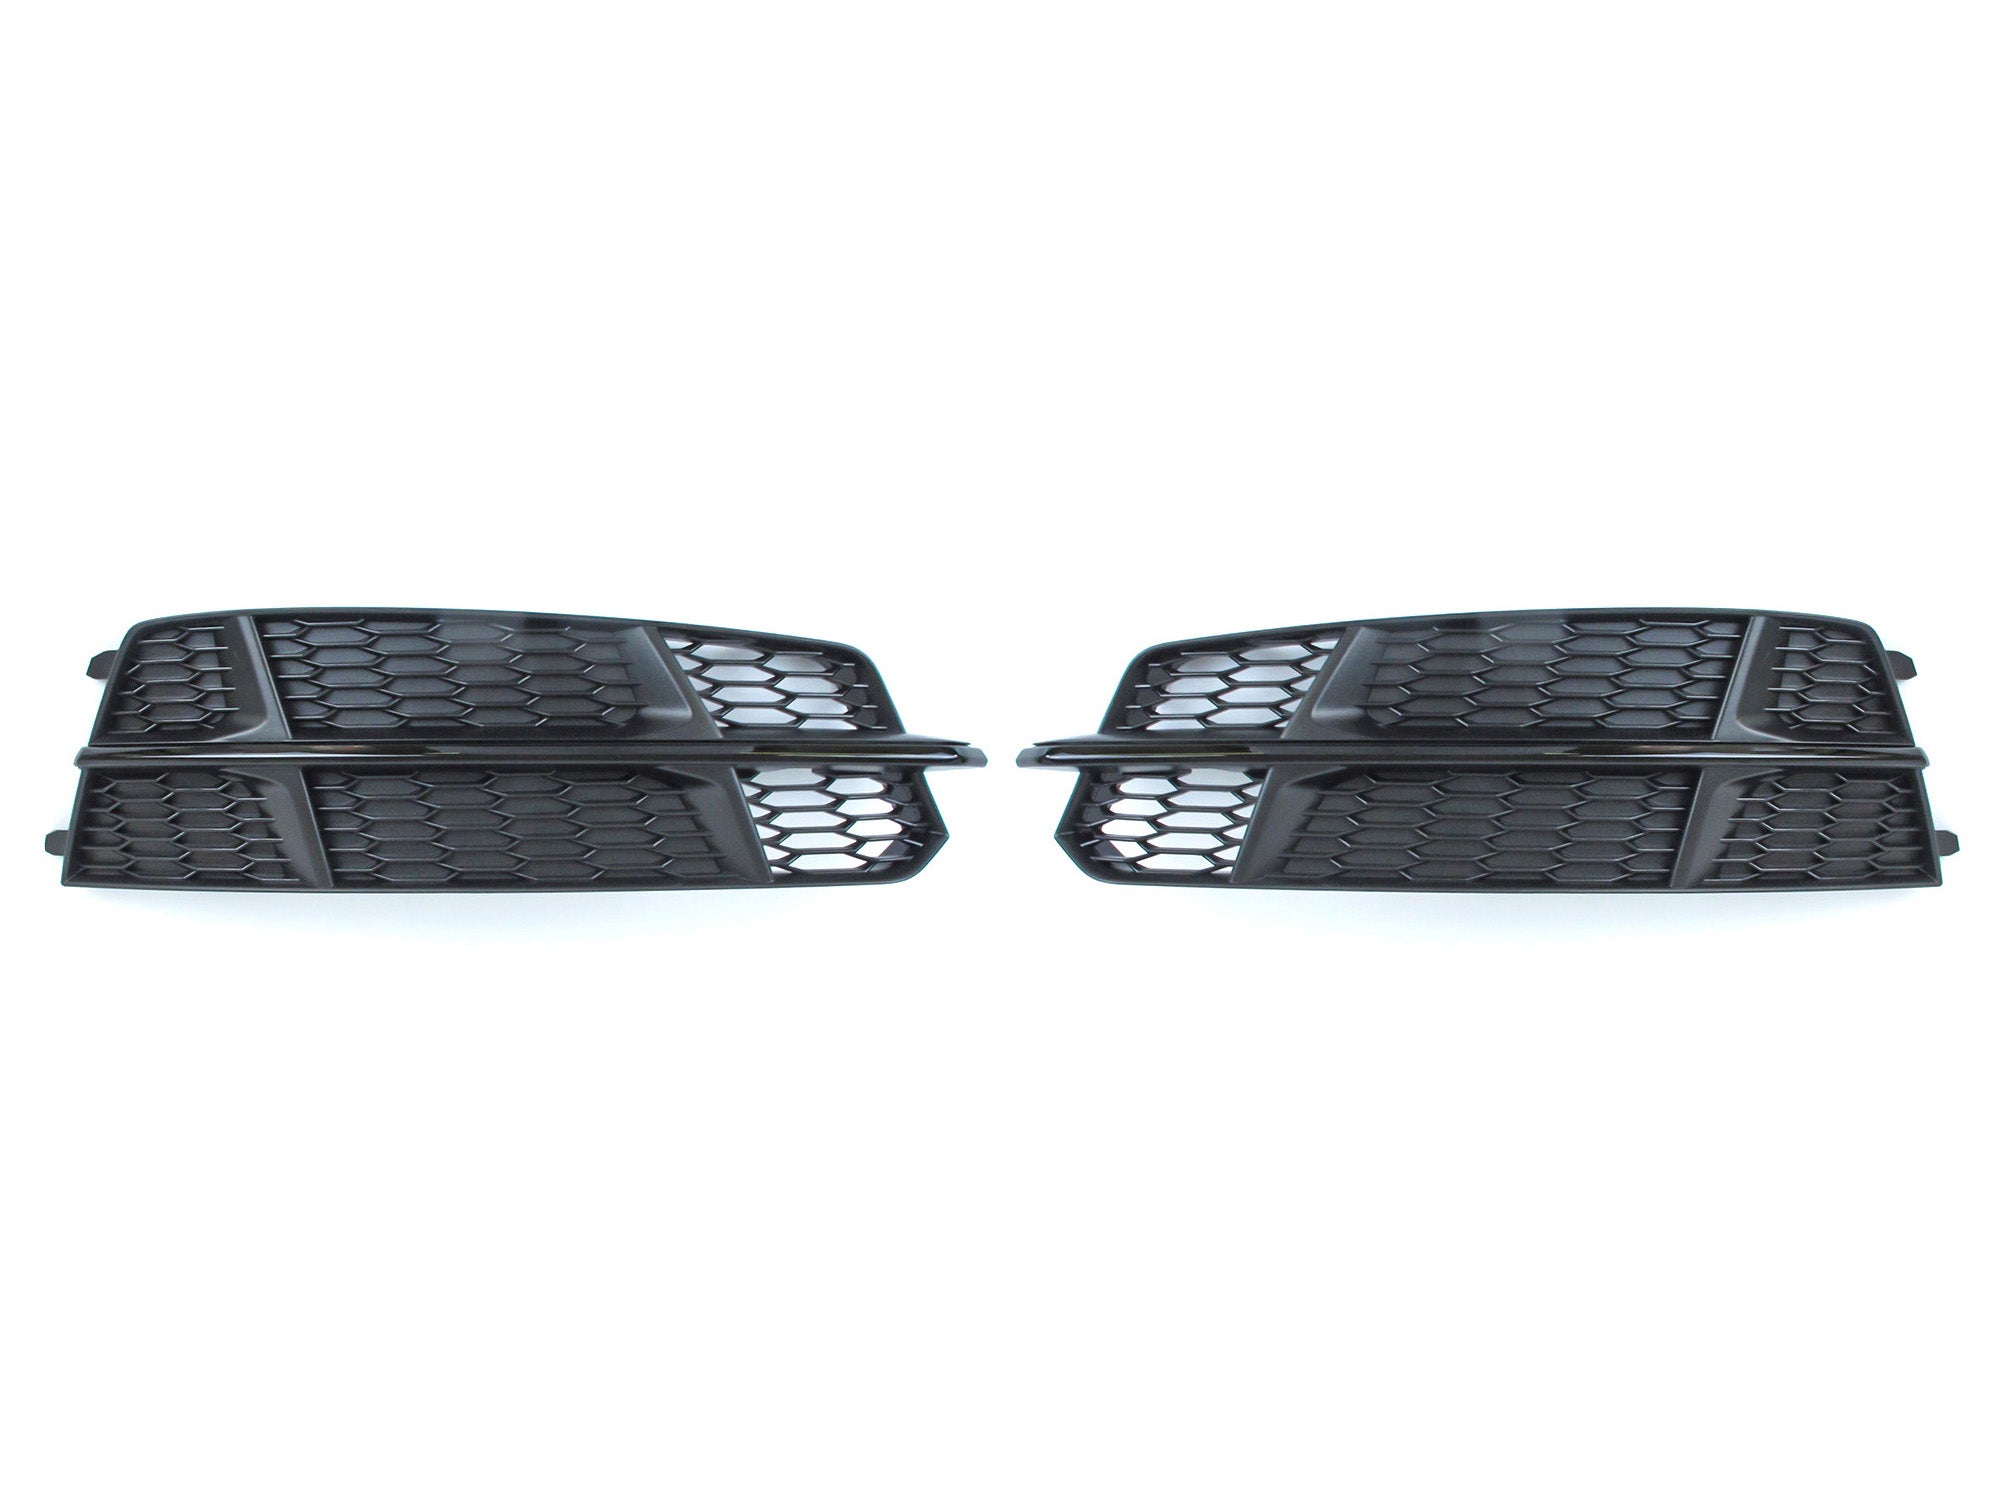 ✔️ Top-Qualität Audi A6 C7 Nebelscheinwerfer Gitter - Perfekter